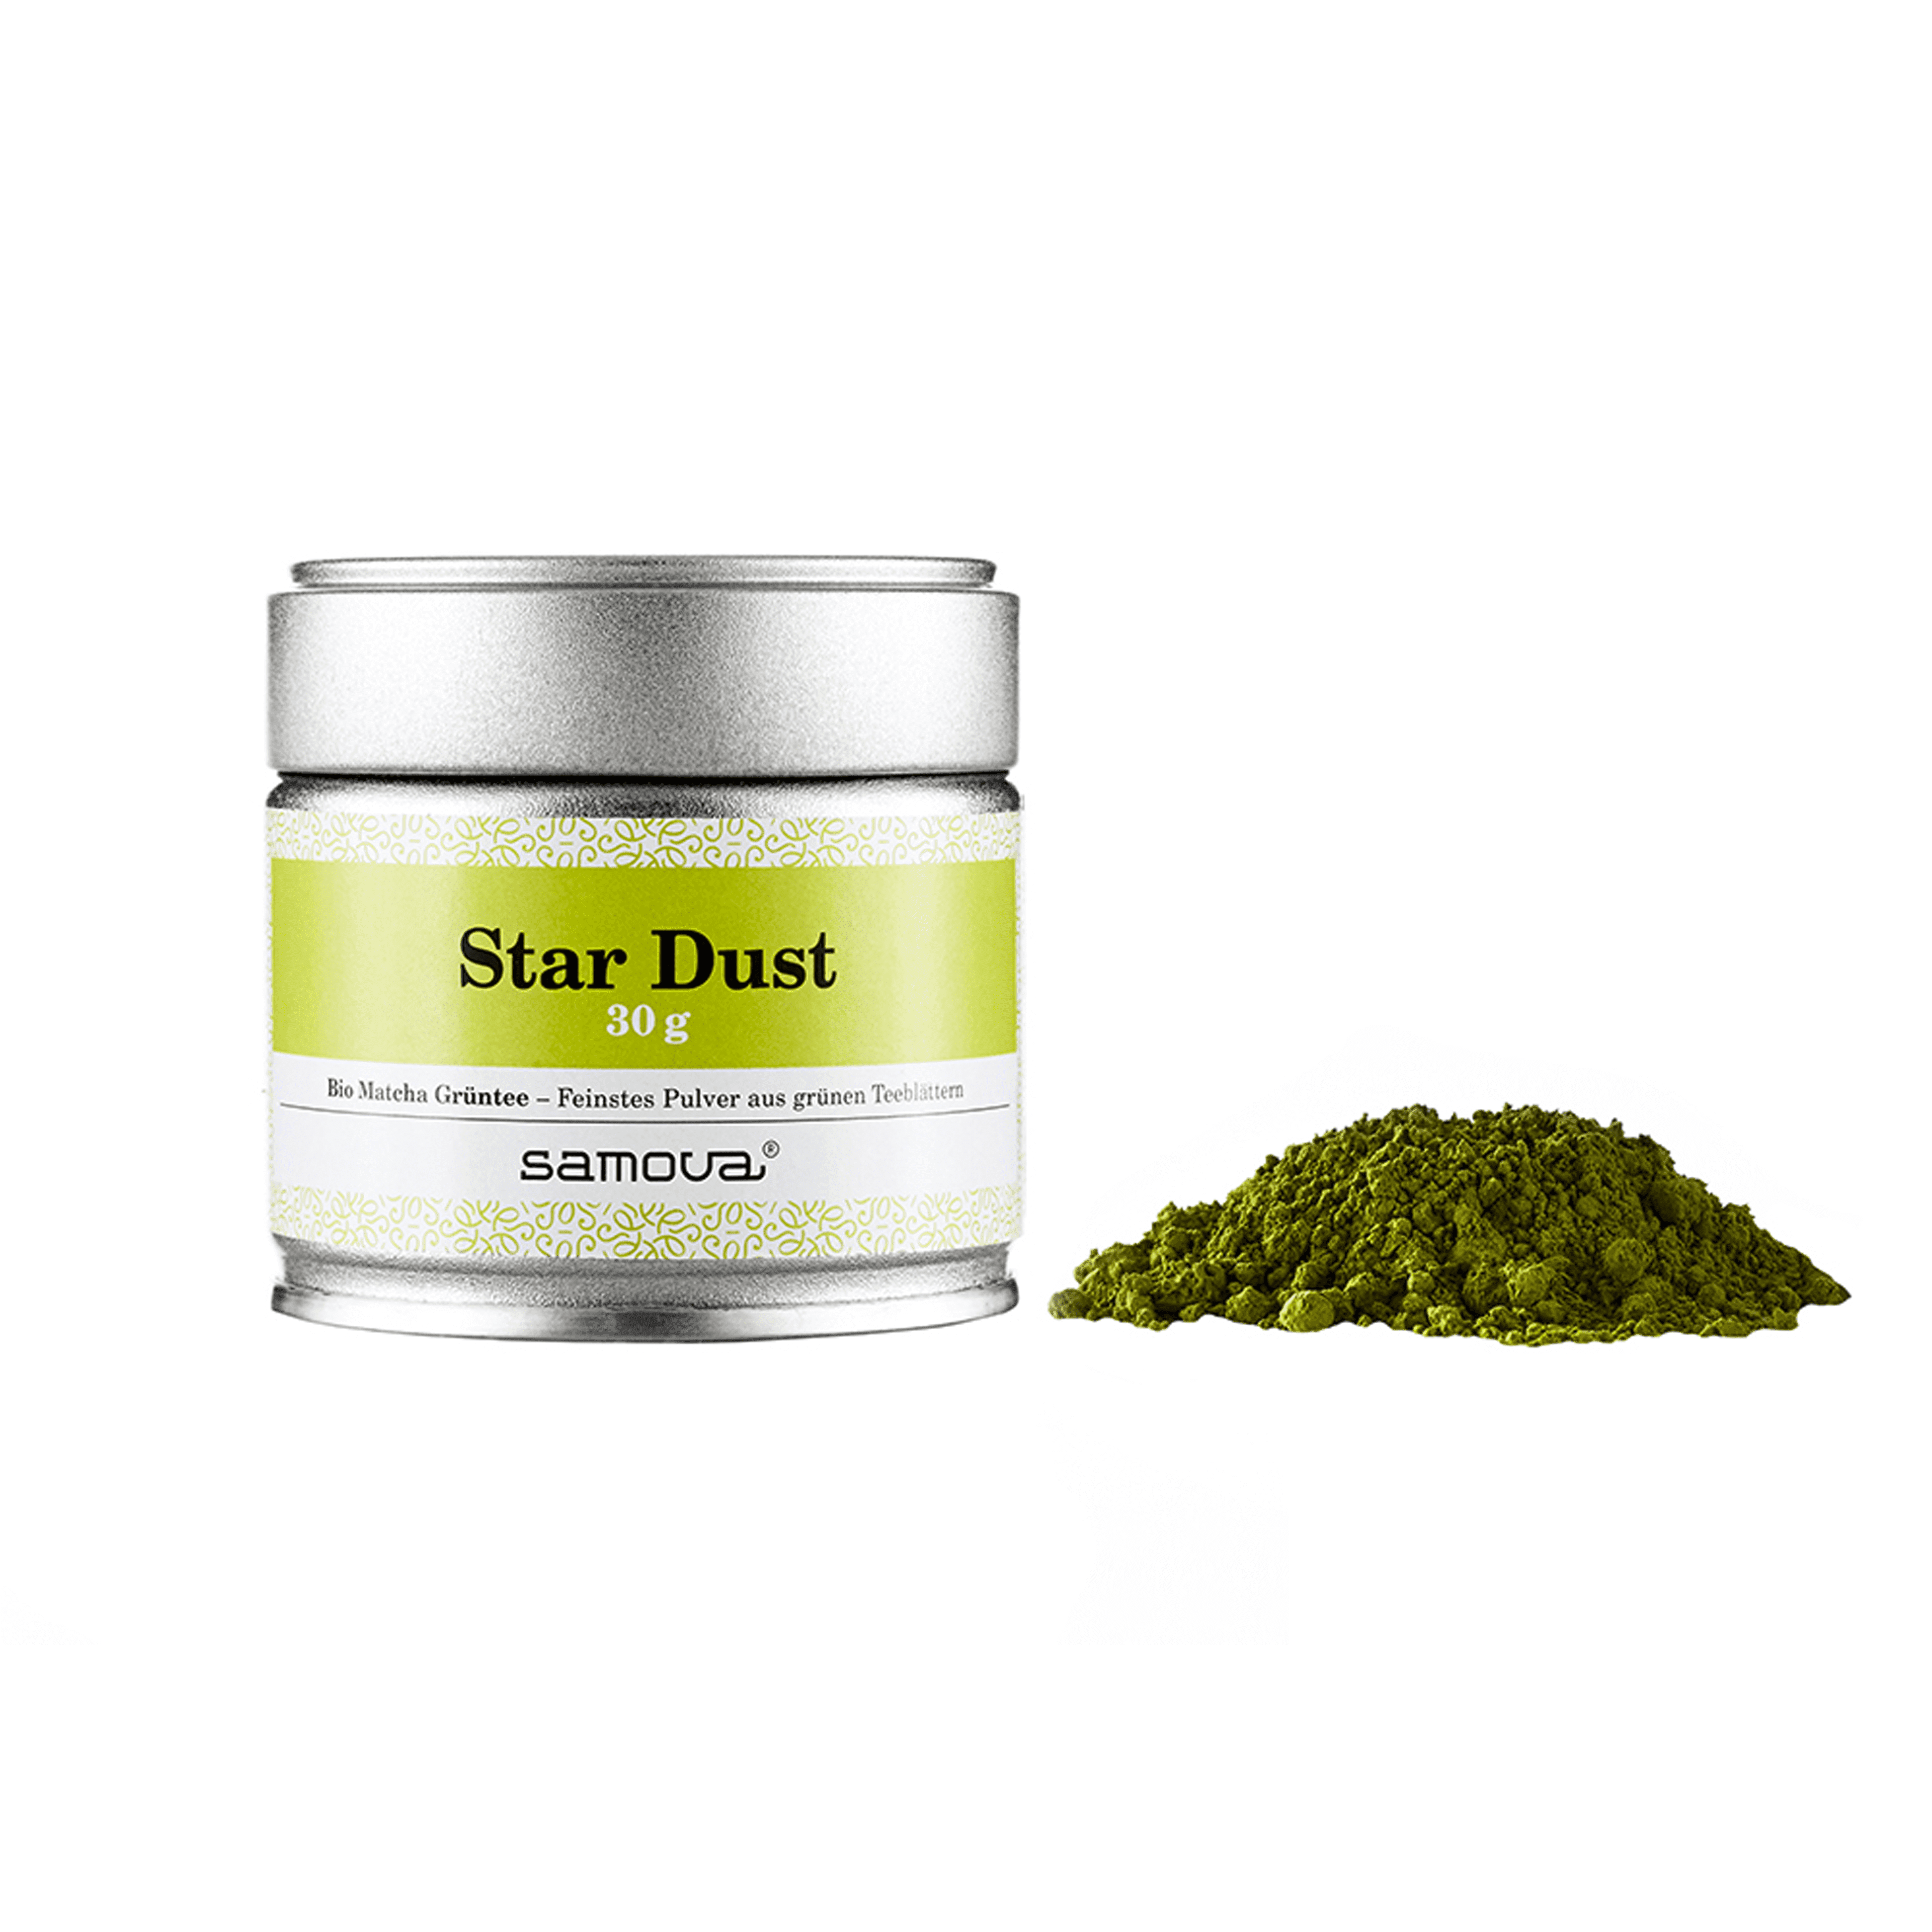 Dose der Teesorte Star Dust - Bio Matcha Grüntee